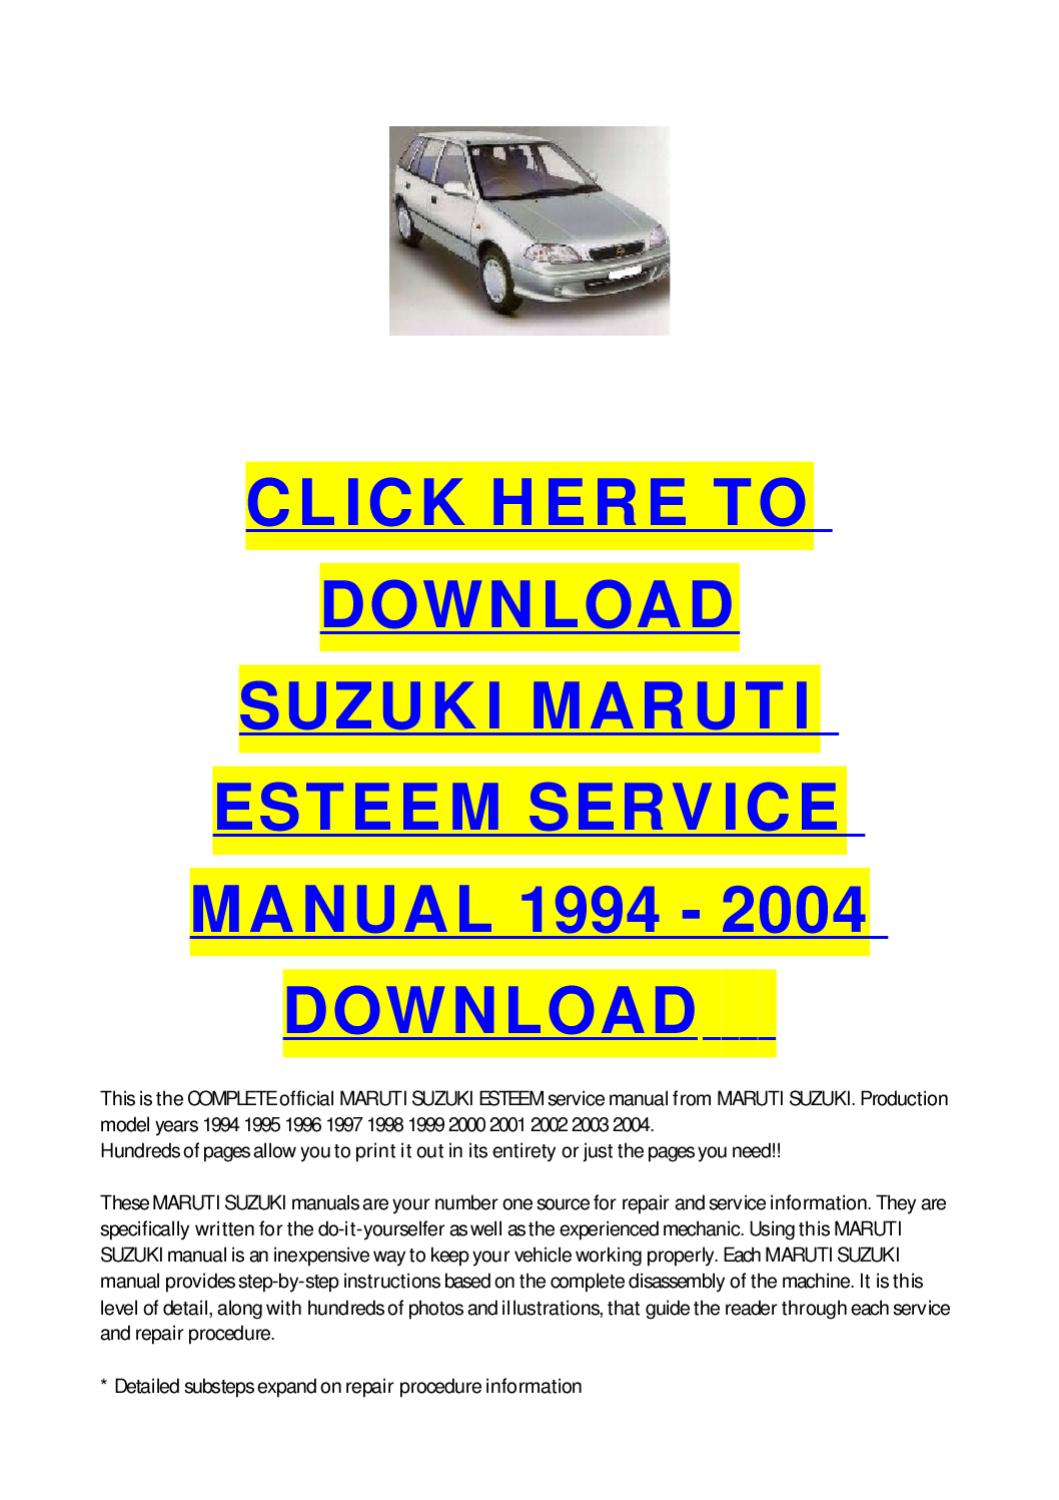 1998 Suzuki Esteem Repair Manual Download